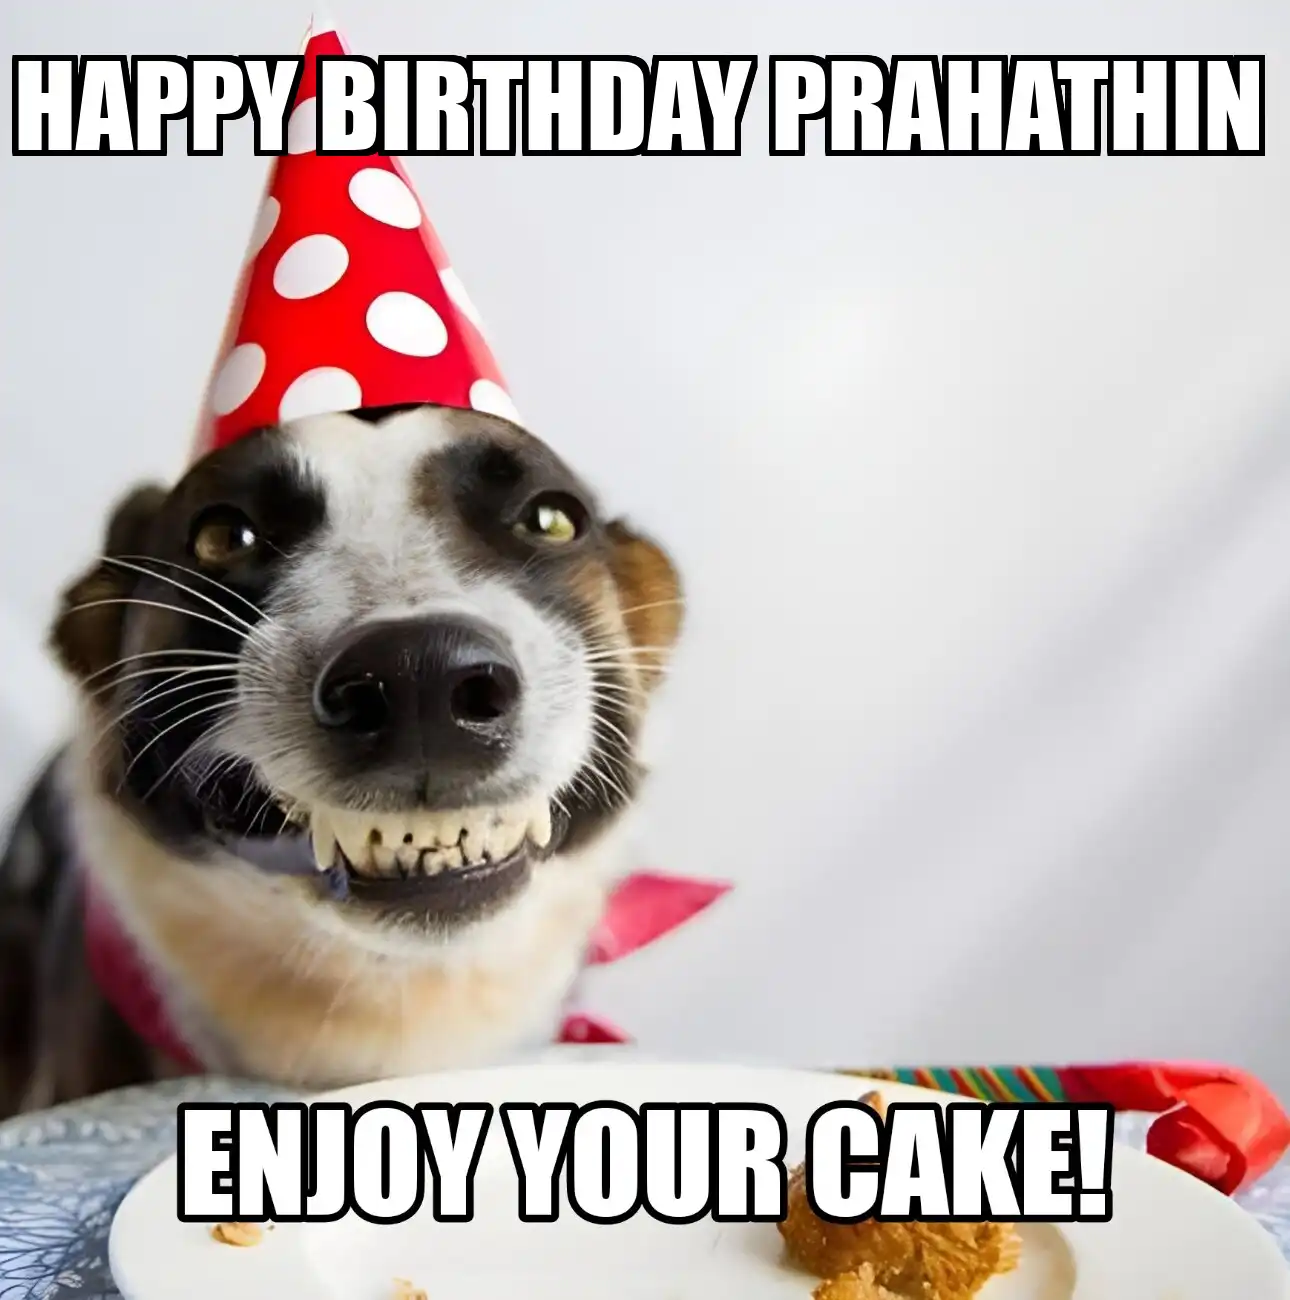 Happy Birthday Prahathin Enjoy Your Cake Dog Meme